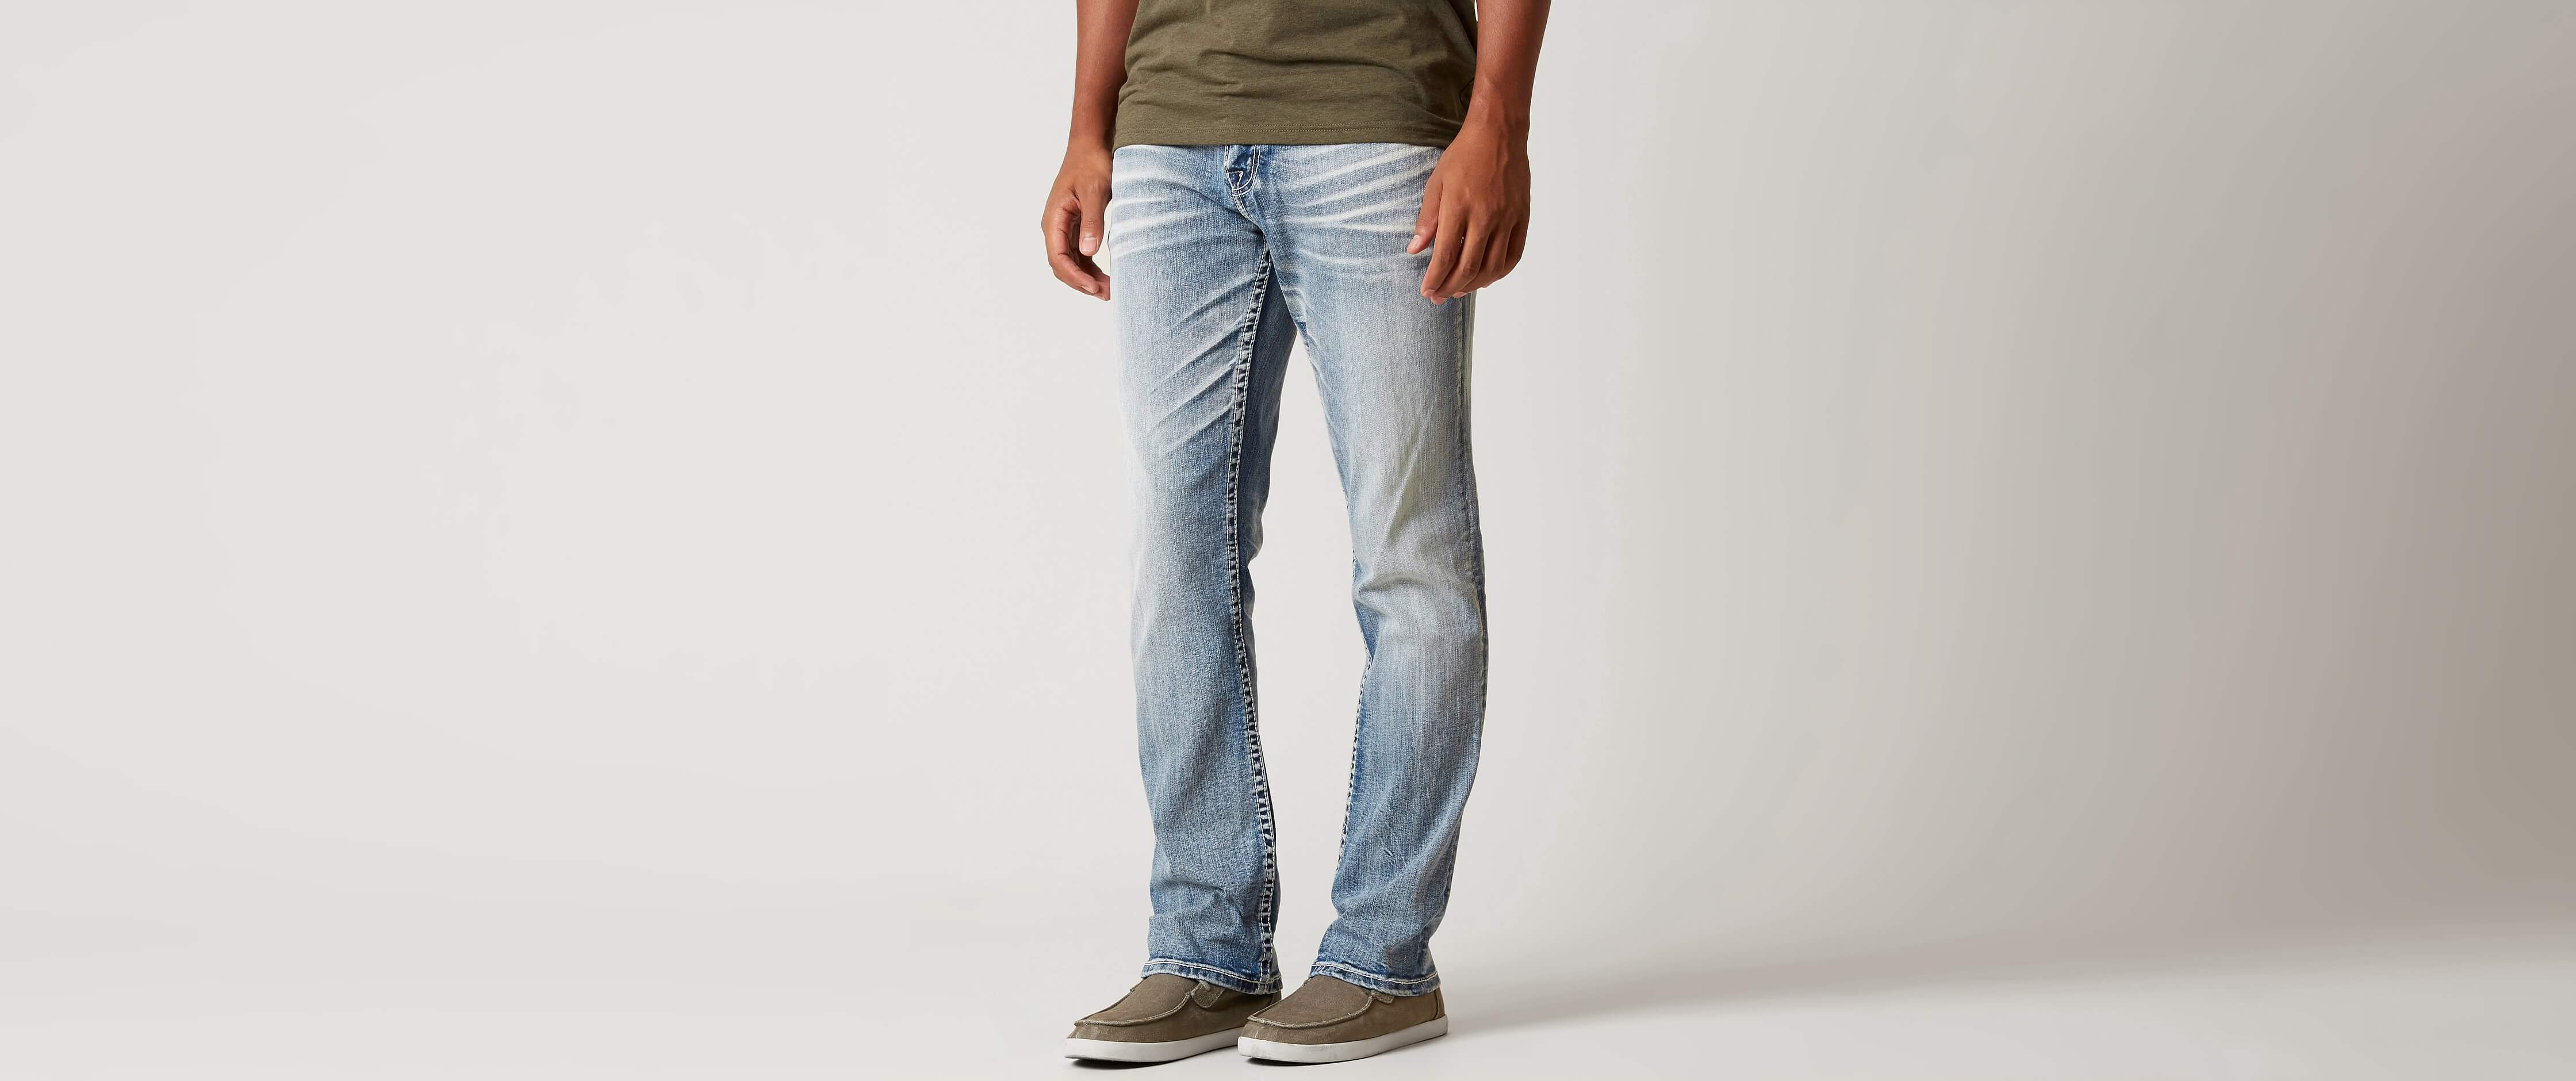 bke carter men's jeans